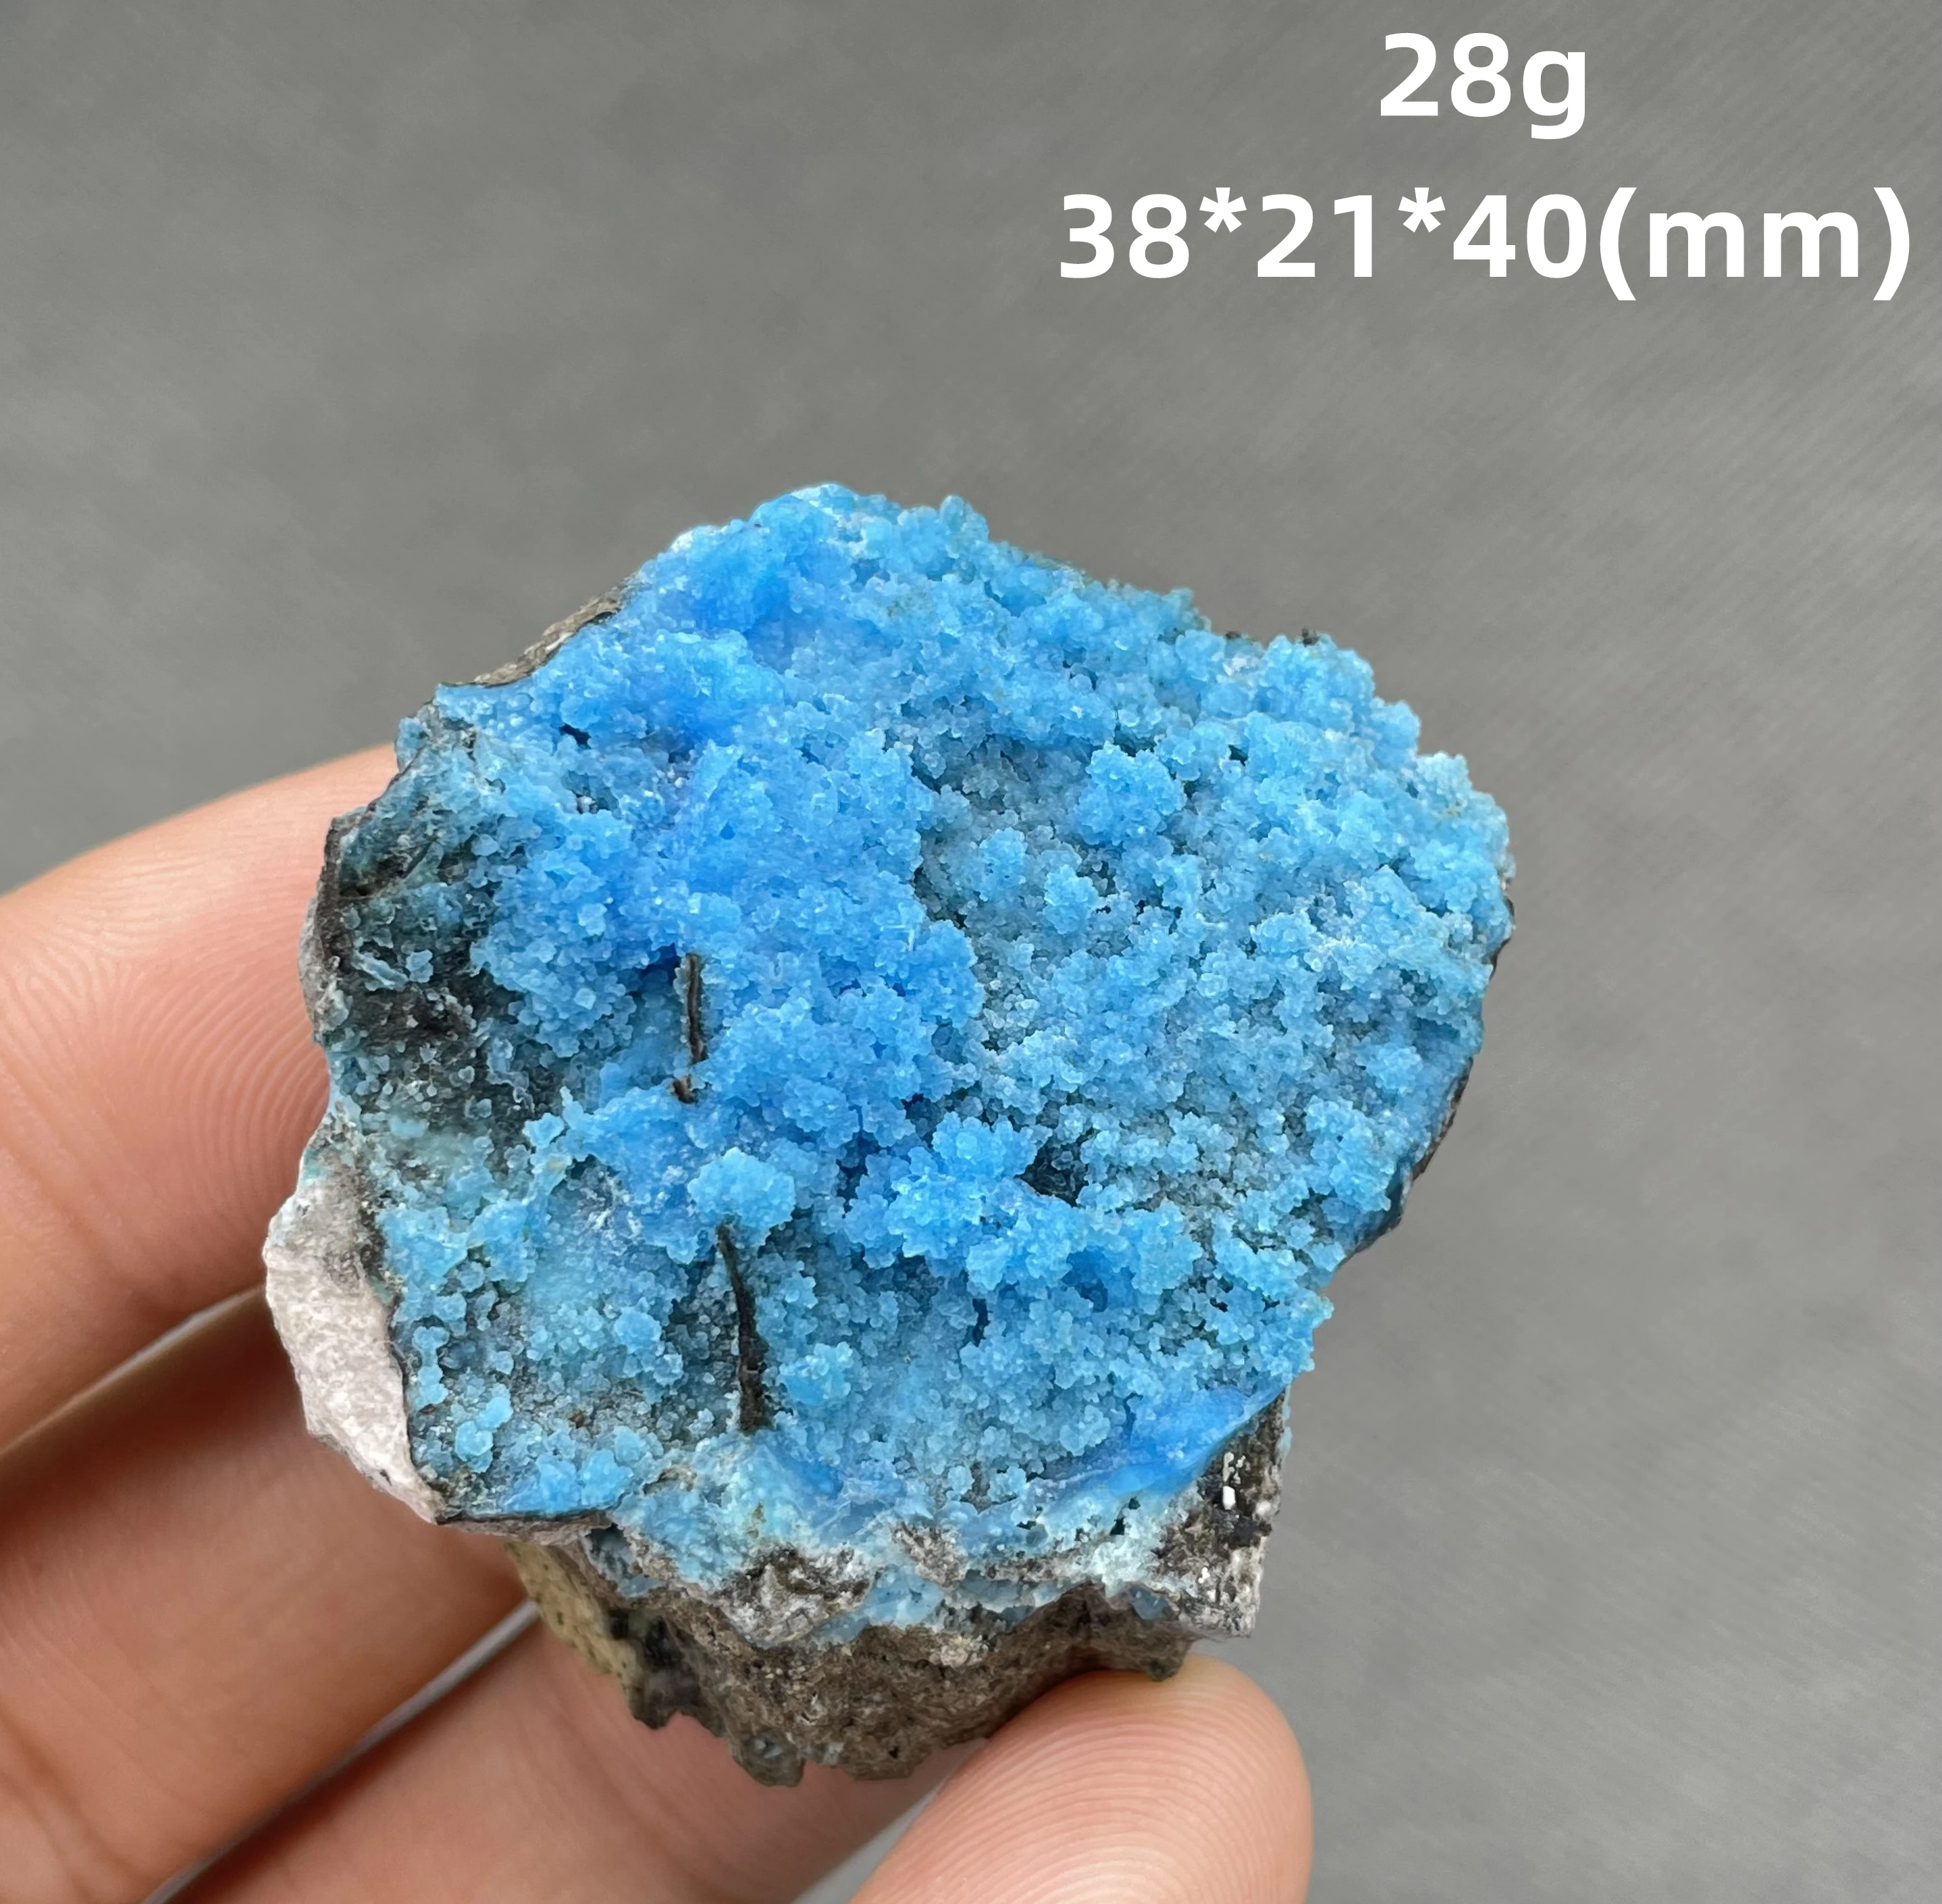 ЛУЧШИЙ! 100% натуральный большой голубой гиббсит минеральный образец камни и кристаллы целебные кристаллы